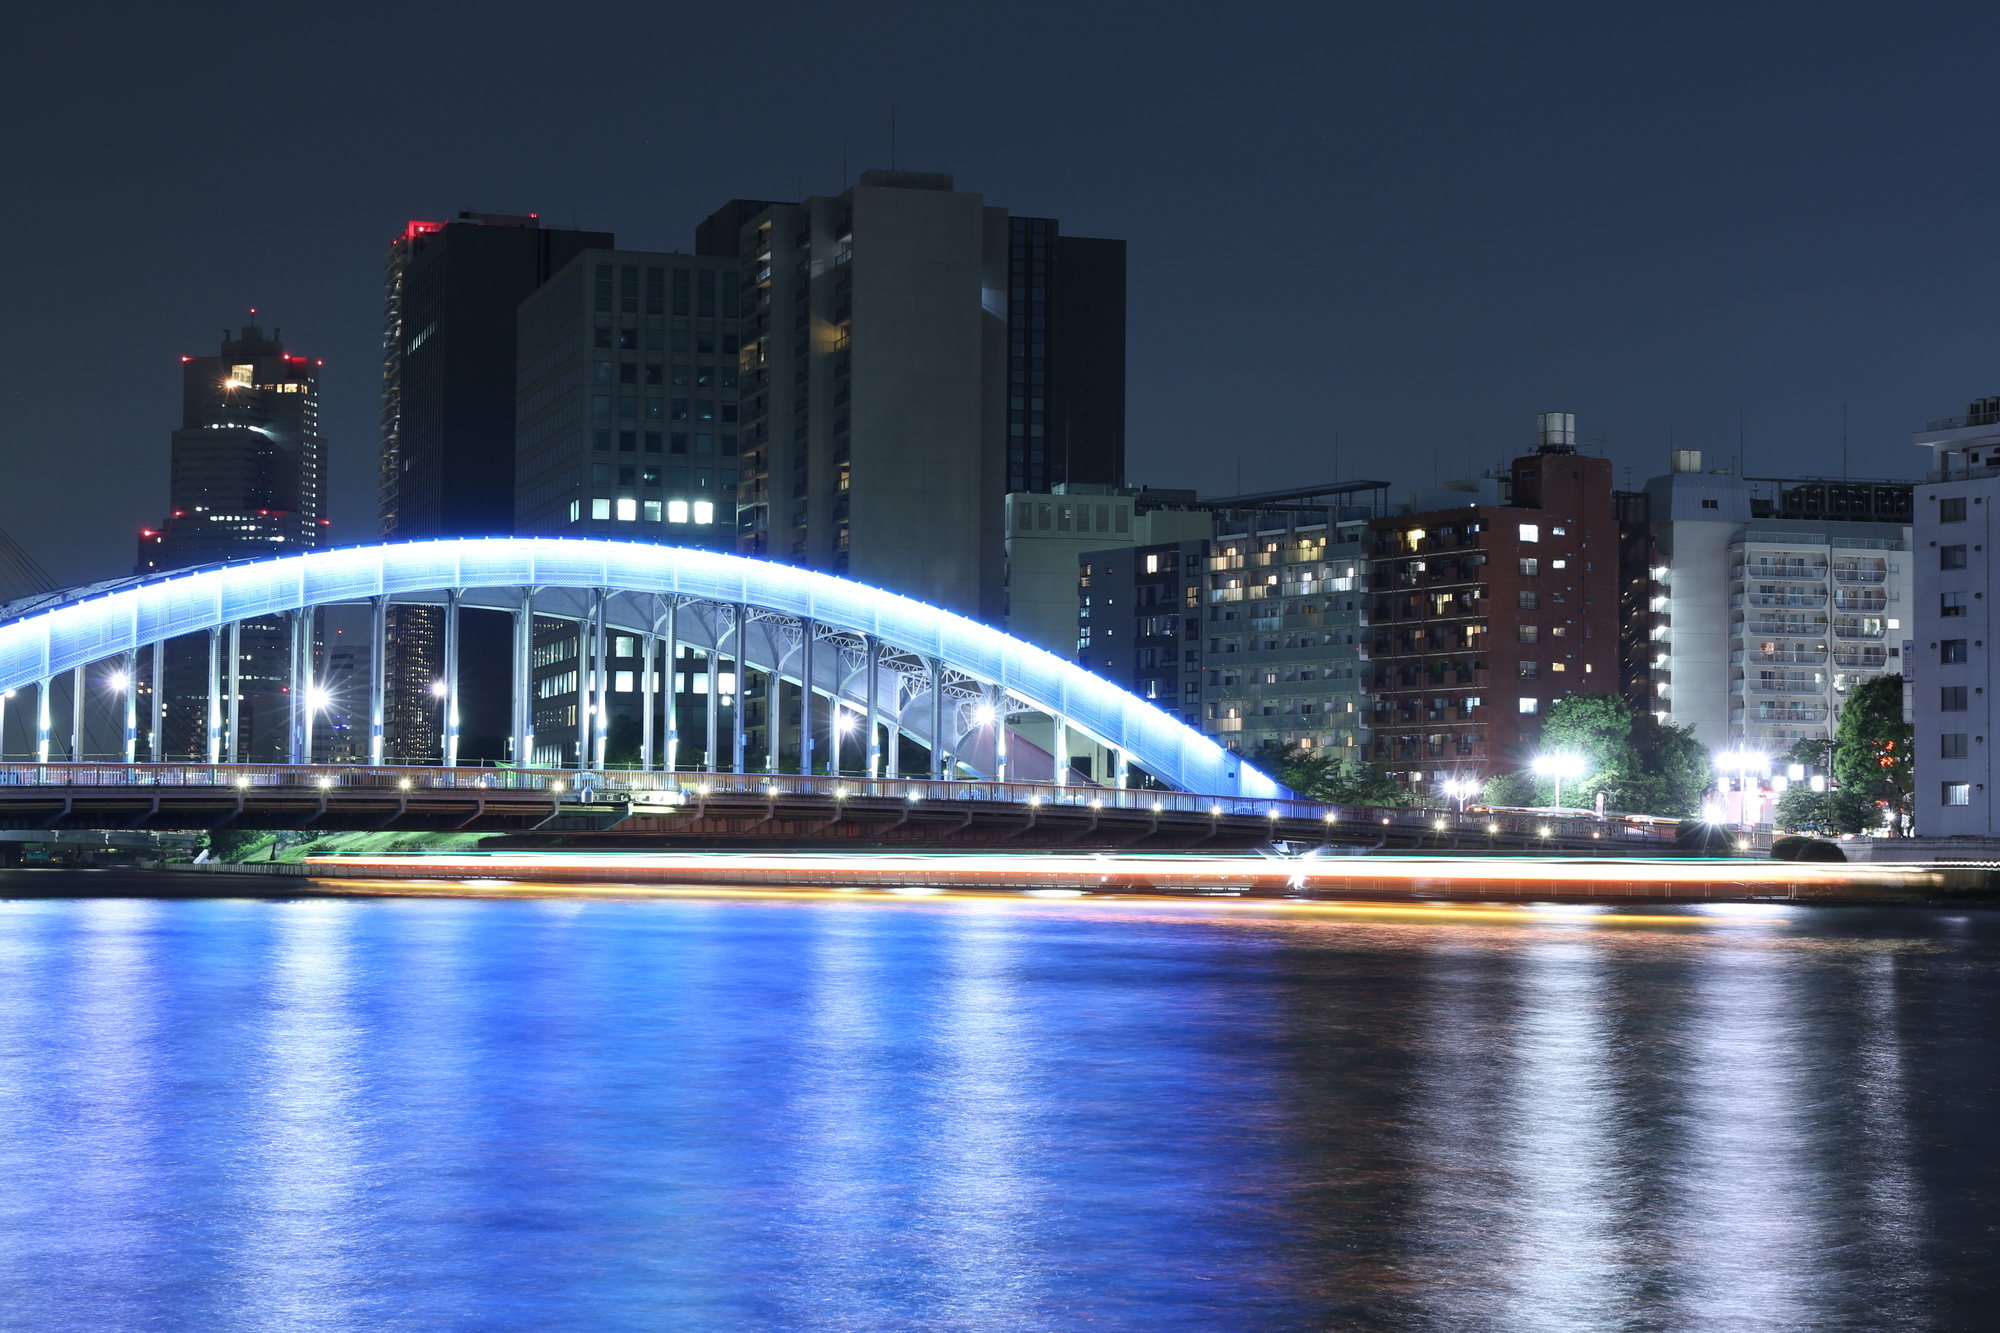 川の上から見える美しくライトアップされた橋